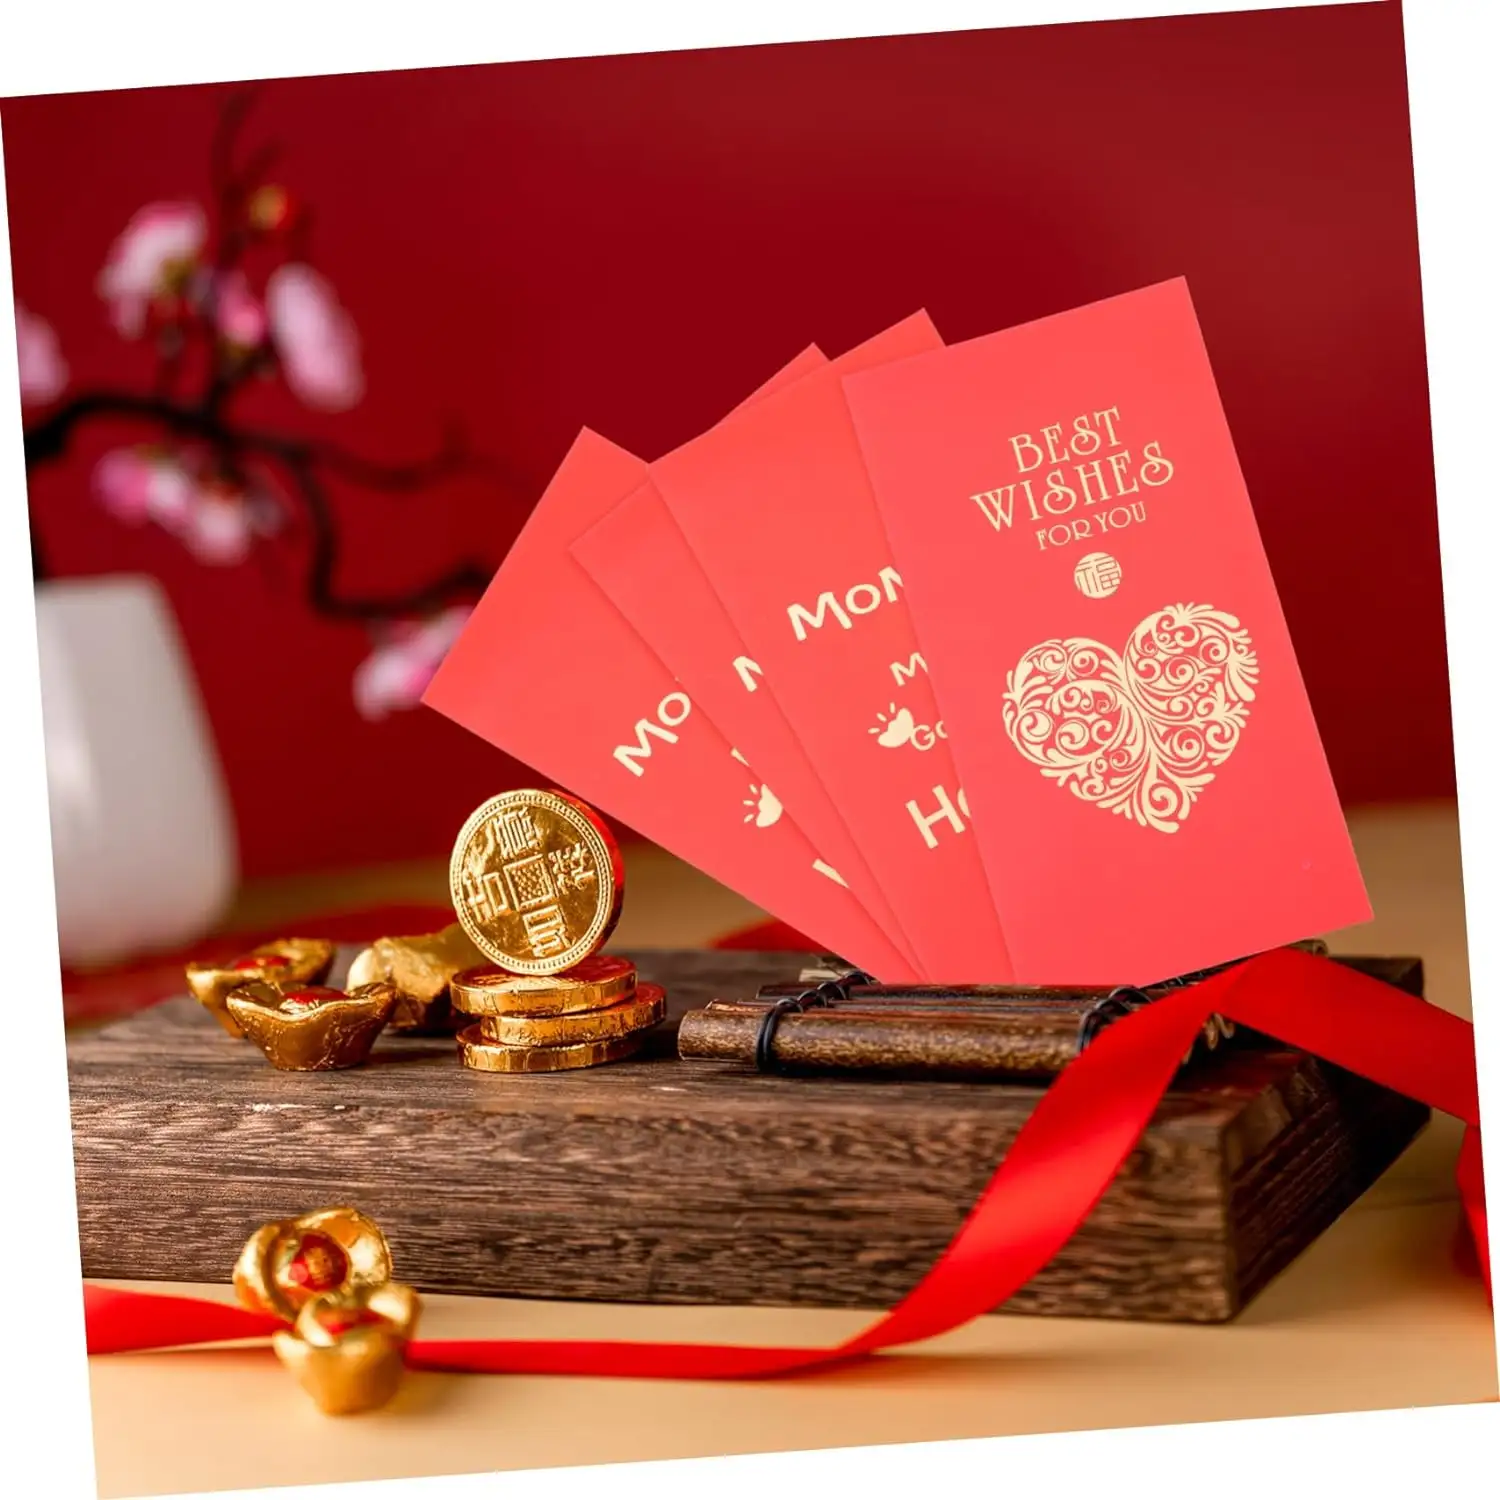 पैसे की शादी के लिए लाल लिफाफों के लिए लाल लिफाफों के लिए तैयार किया गया है शुभ समाचार पत्र